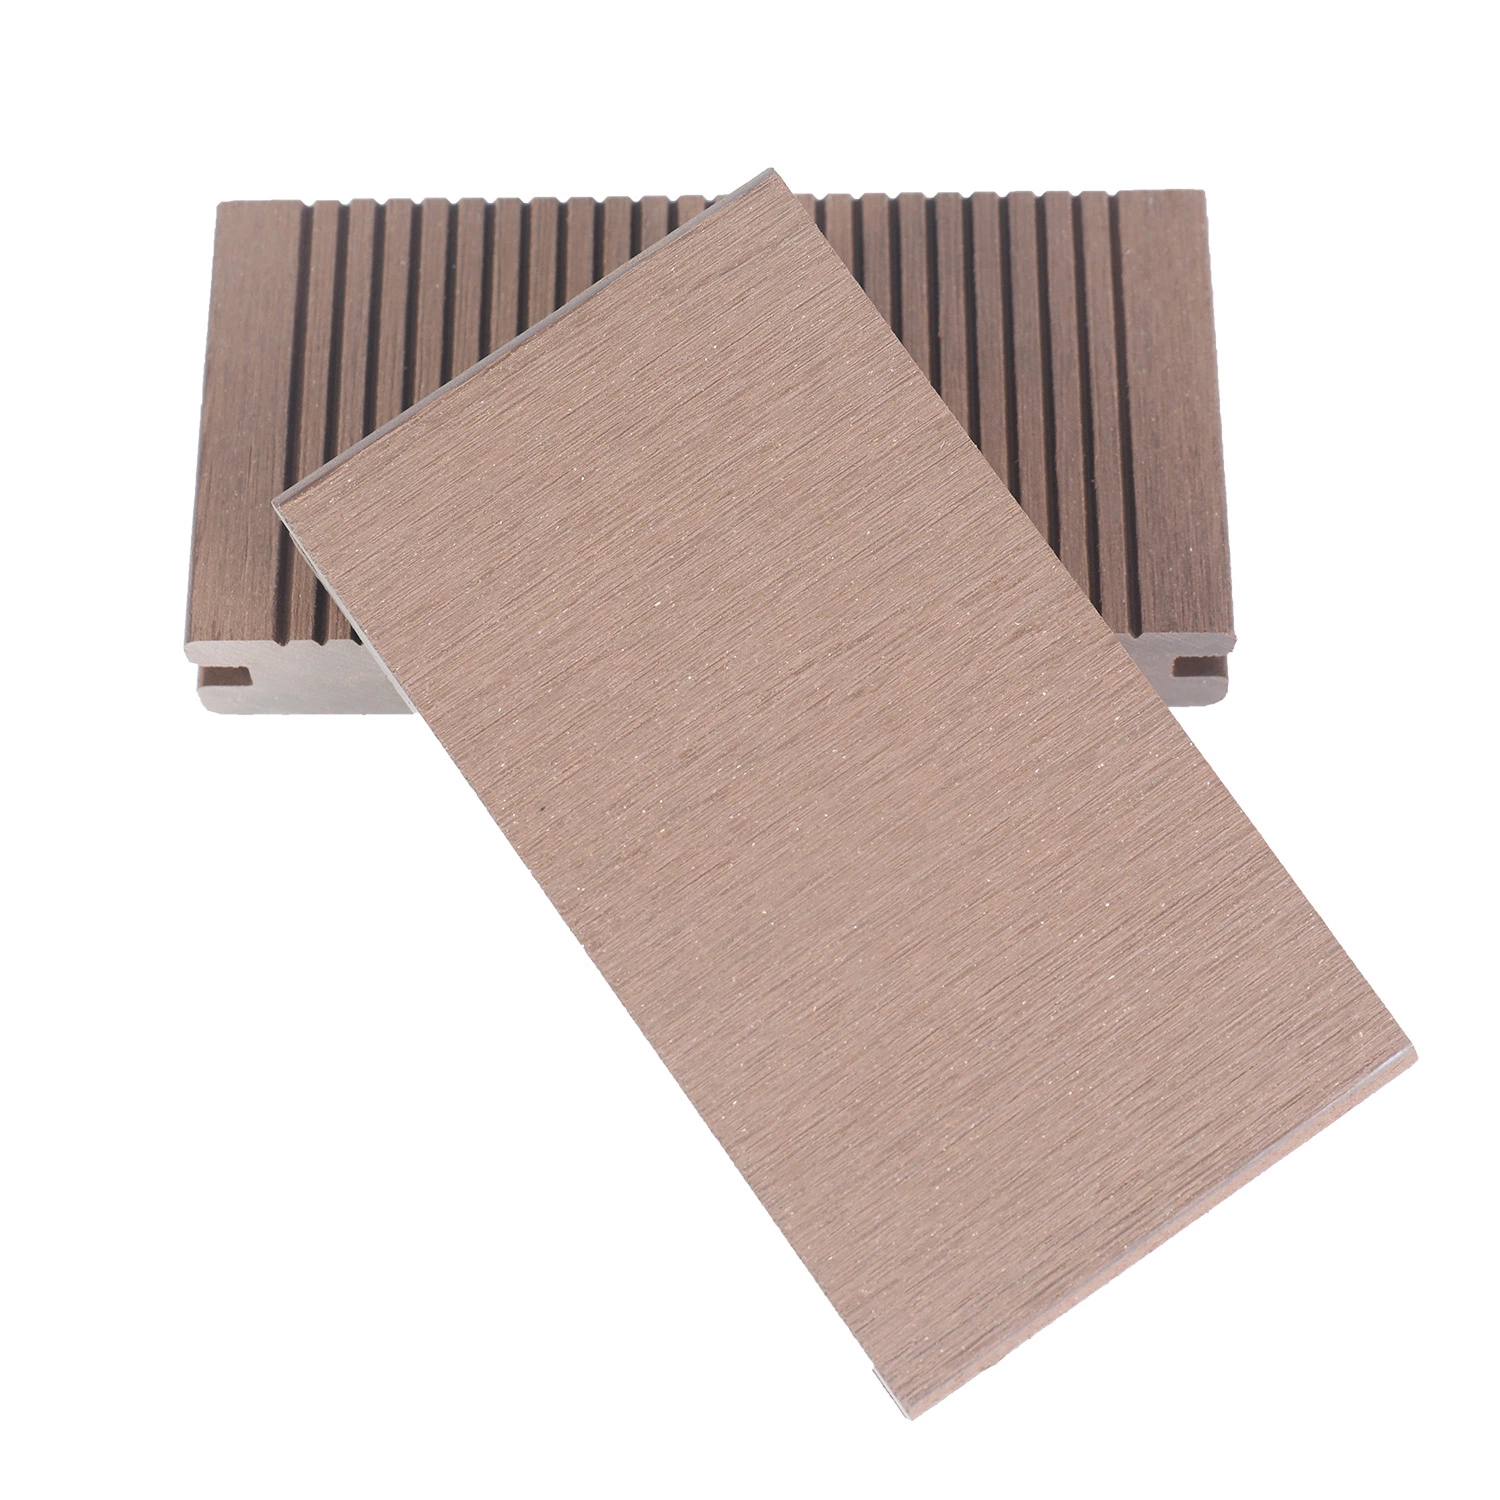 Ocox Revêtement de sol composite en bois plastique solide imperméable pour l'extérieur, revêtement de sol en WPC pour terrasse